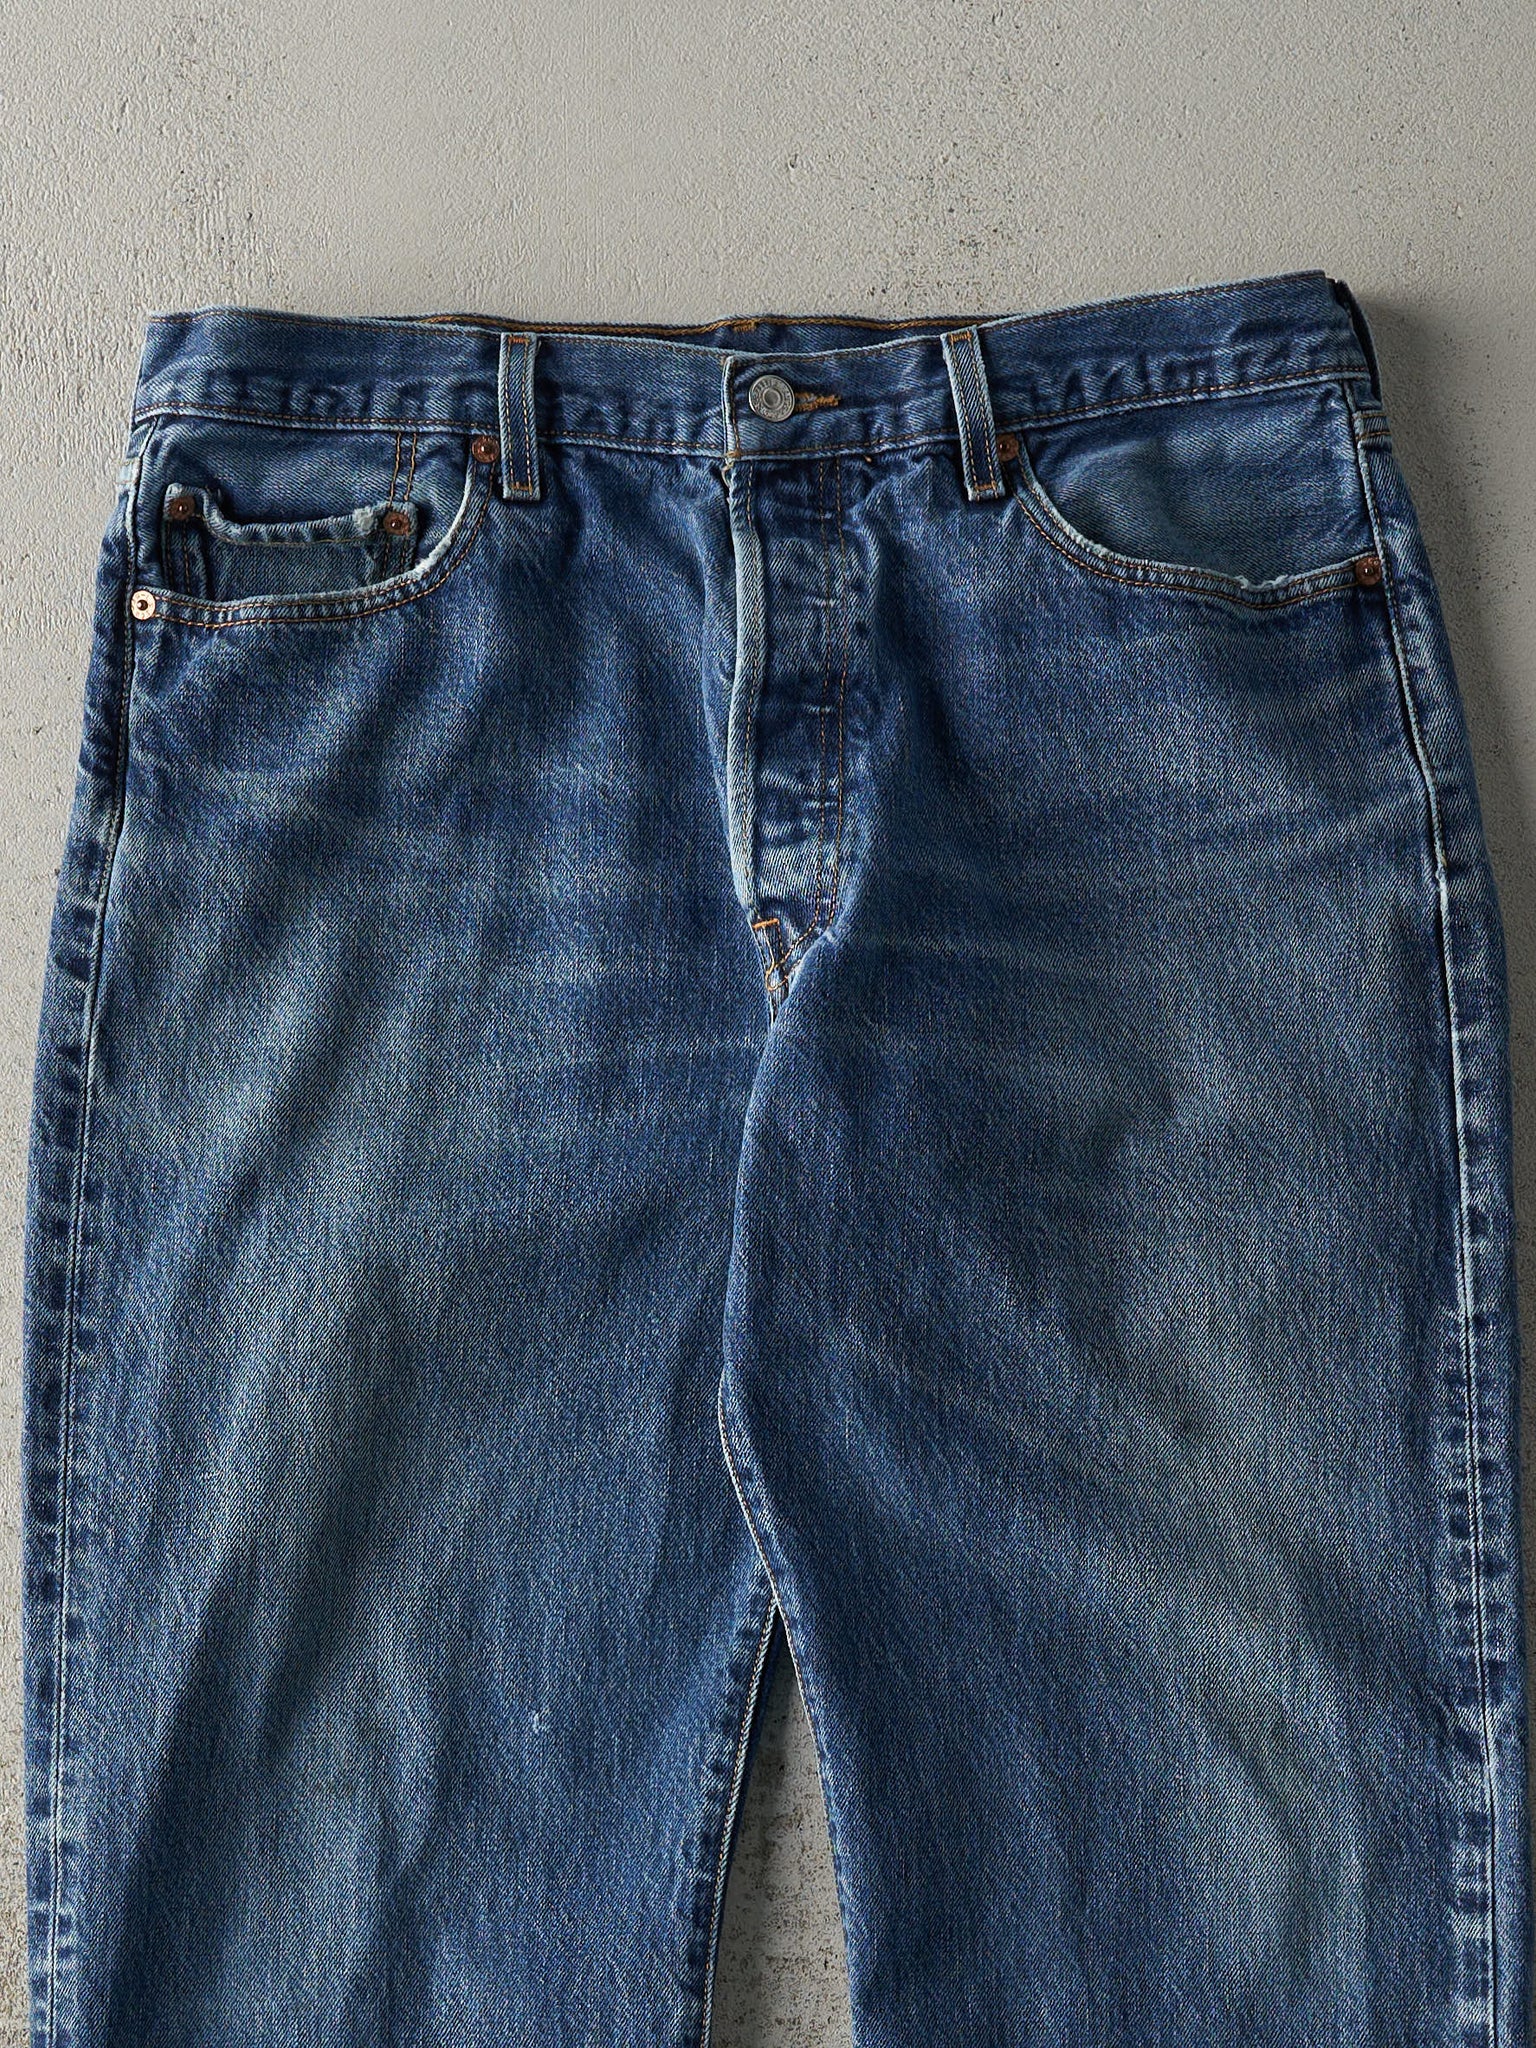 Vintage 90s Dark Wash Levi's 501 Jeans (36x27.5)